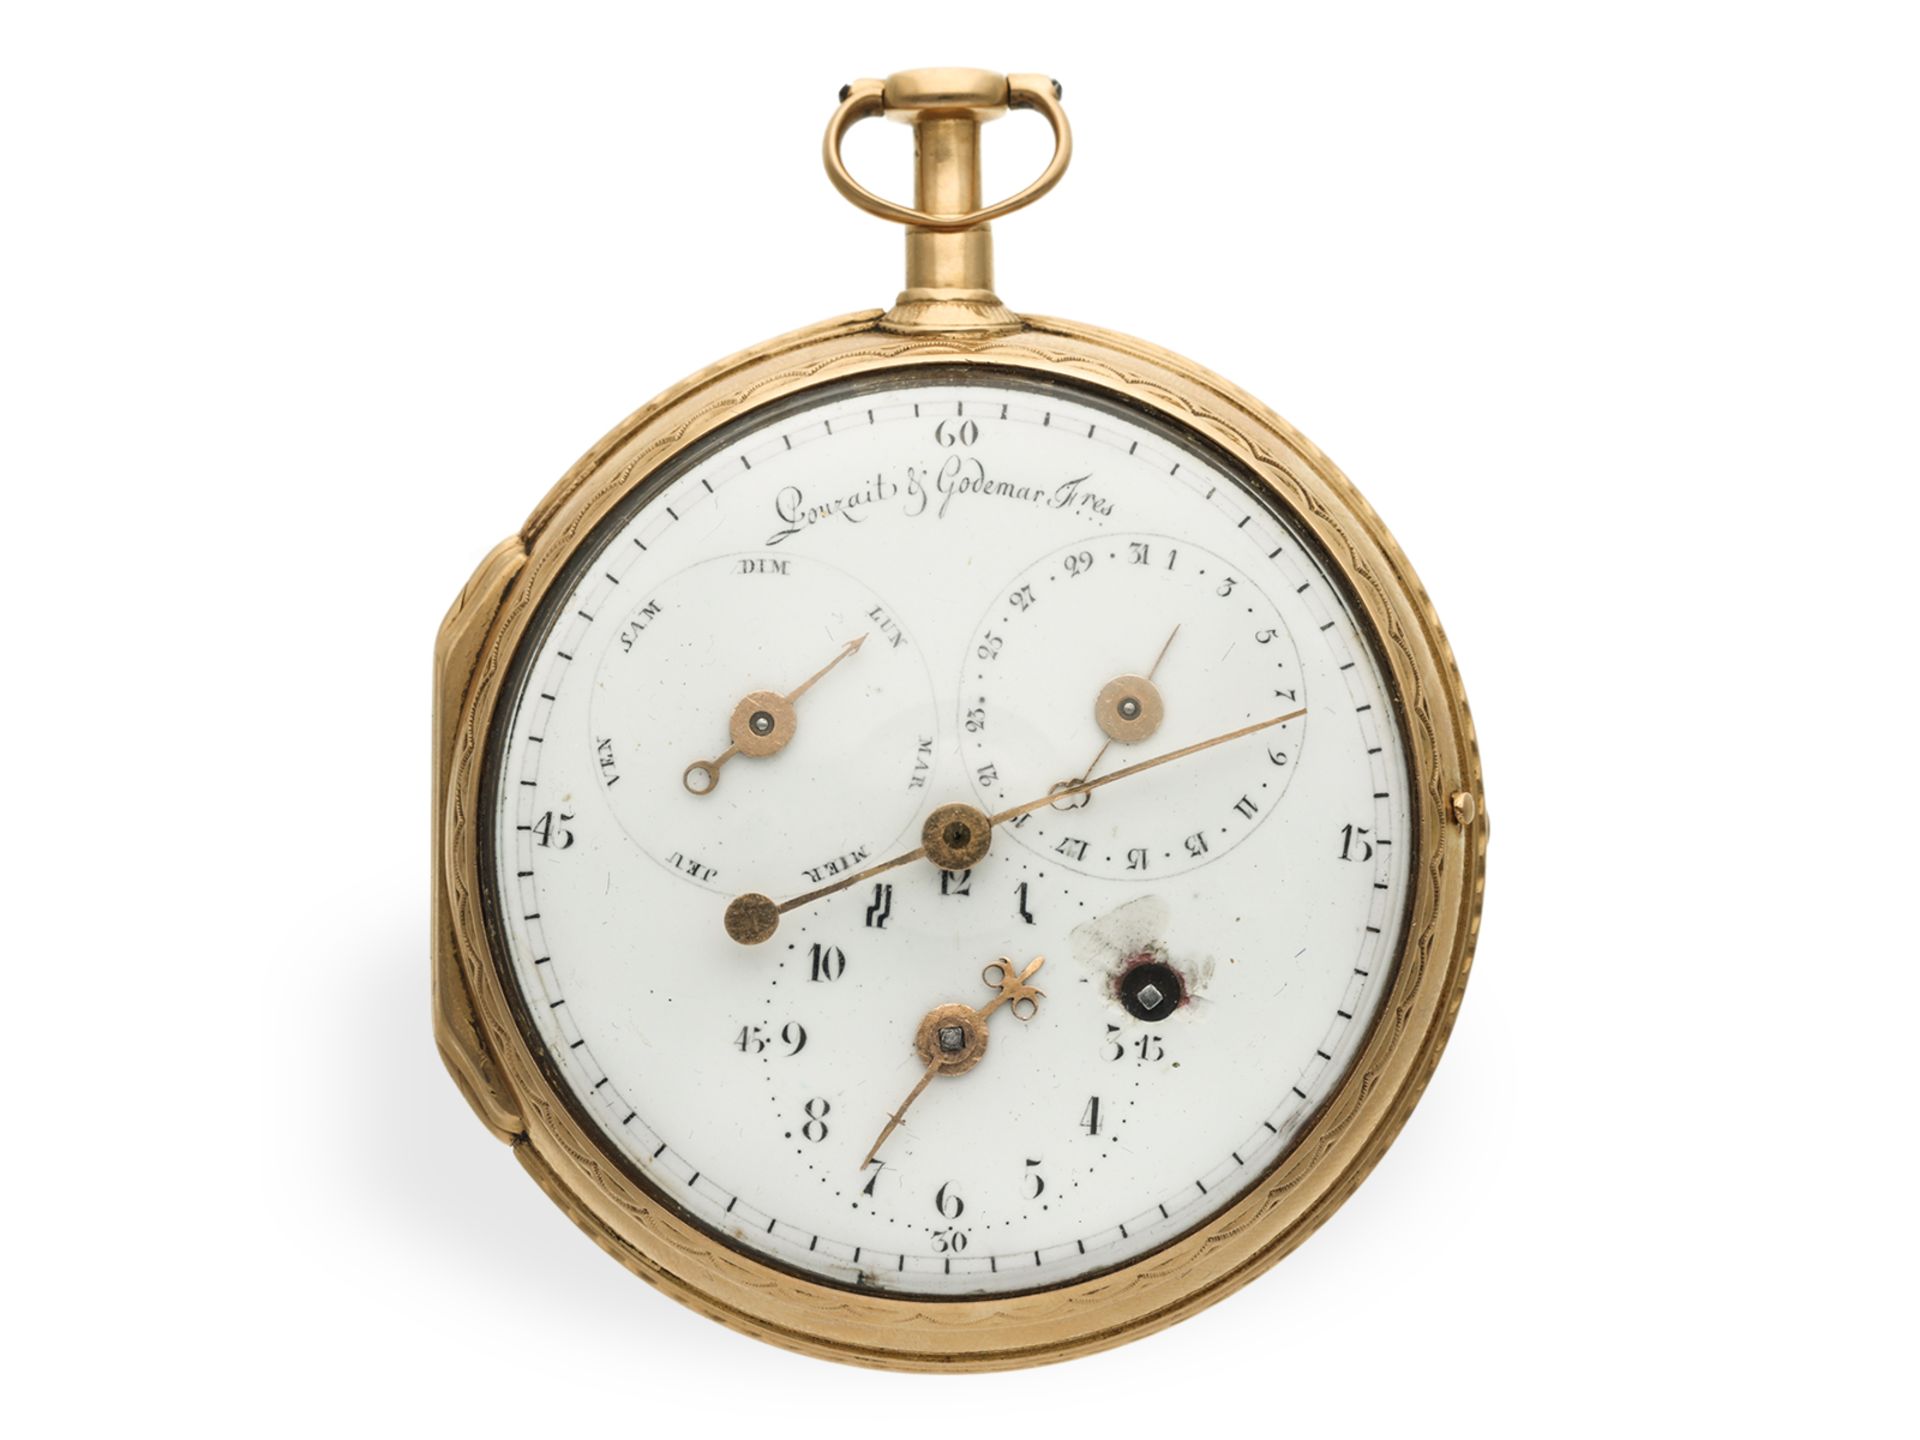 Taschenuhr: absolute Rarität, Pouzait mit springender Sekunde und Kalender, Pouzait signiert, um 179